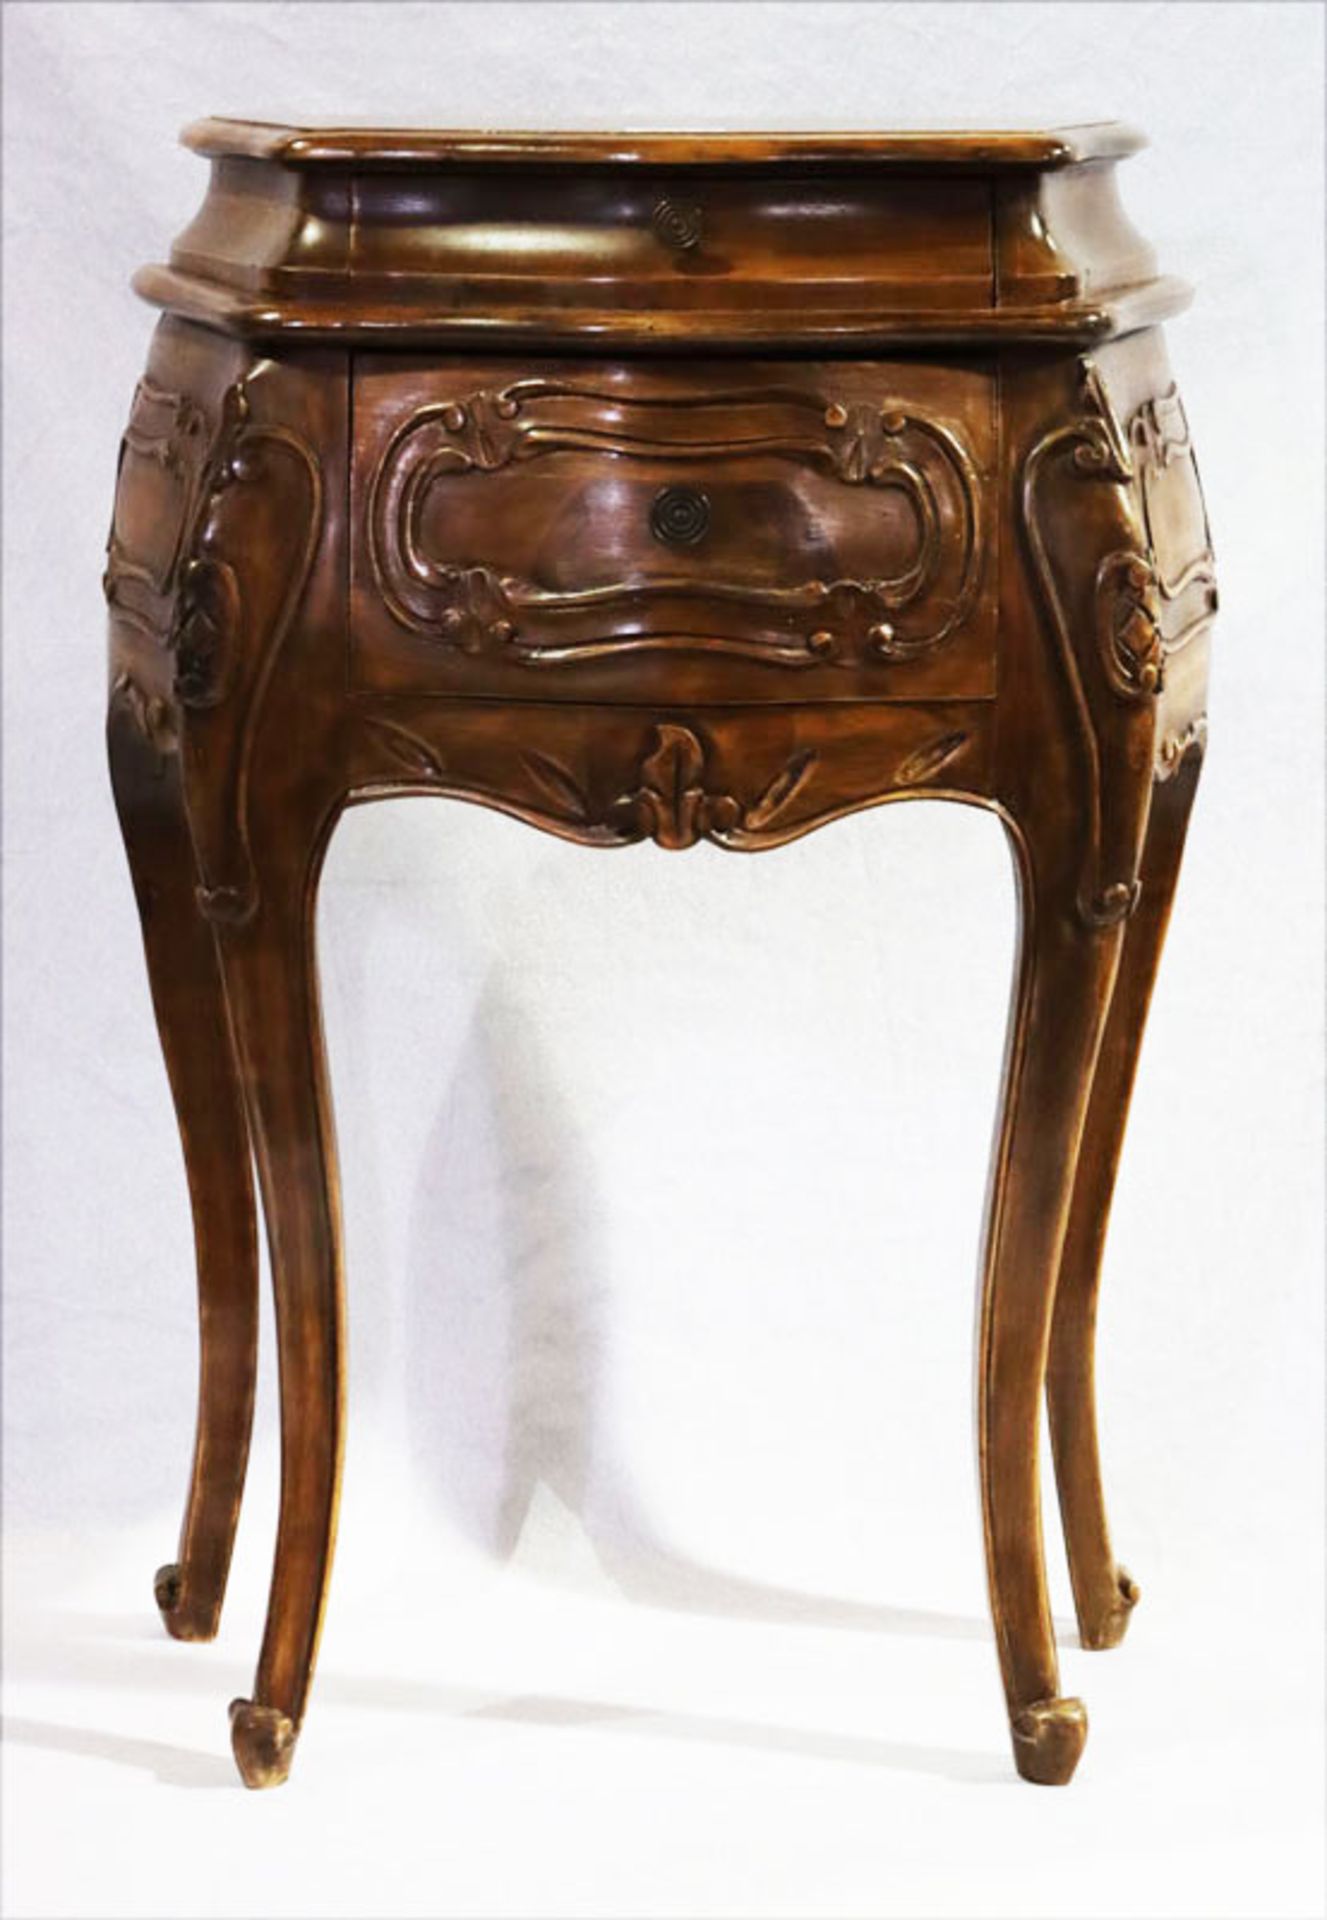 Kleiner Wandtisch auf geschwungenen Beinen, bauchiger Korpus mit 2 Schüben, dunkel gebeizt, H 66 cm,